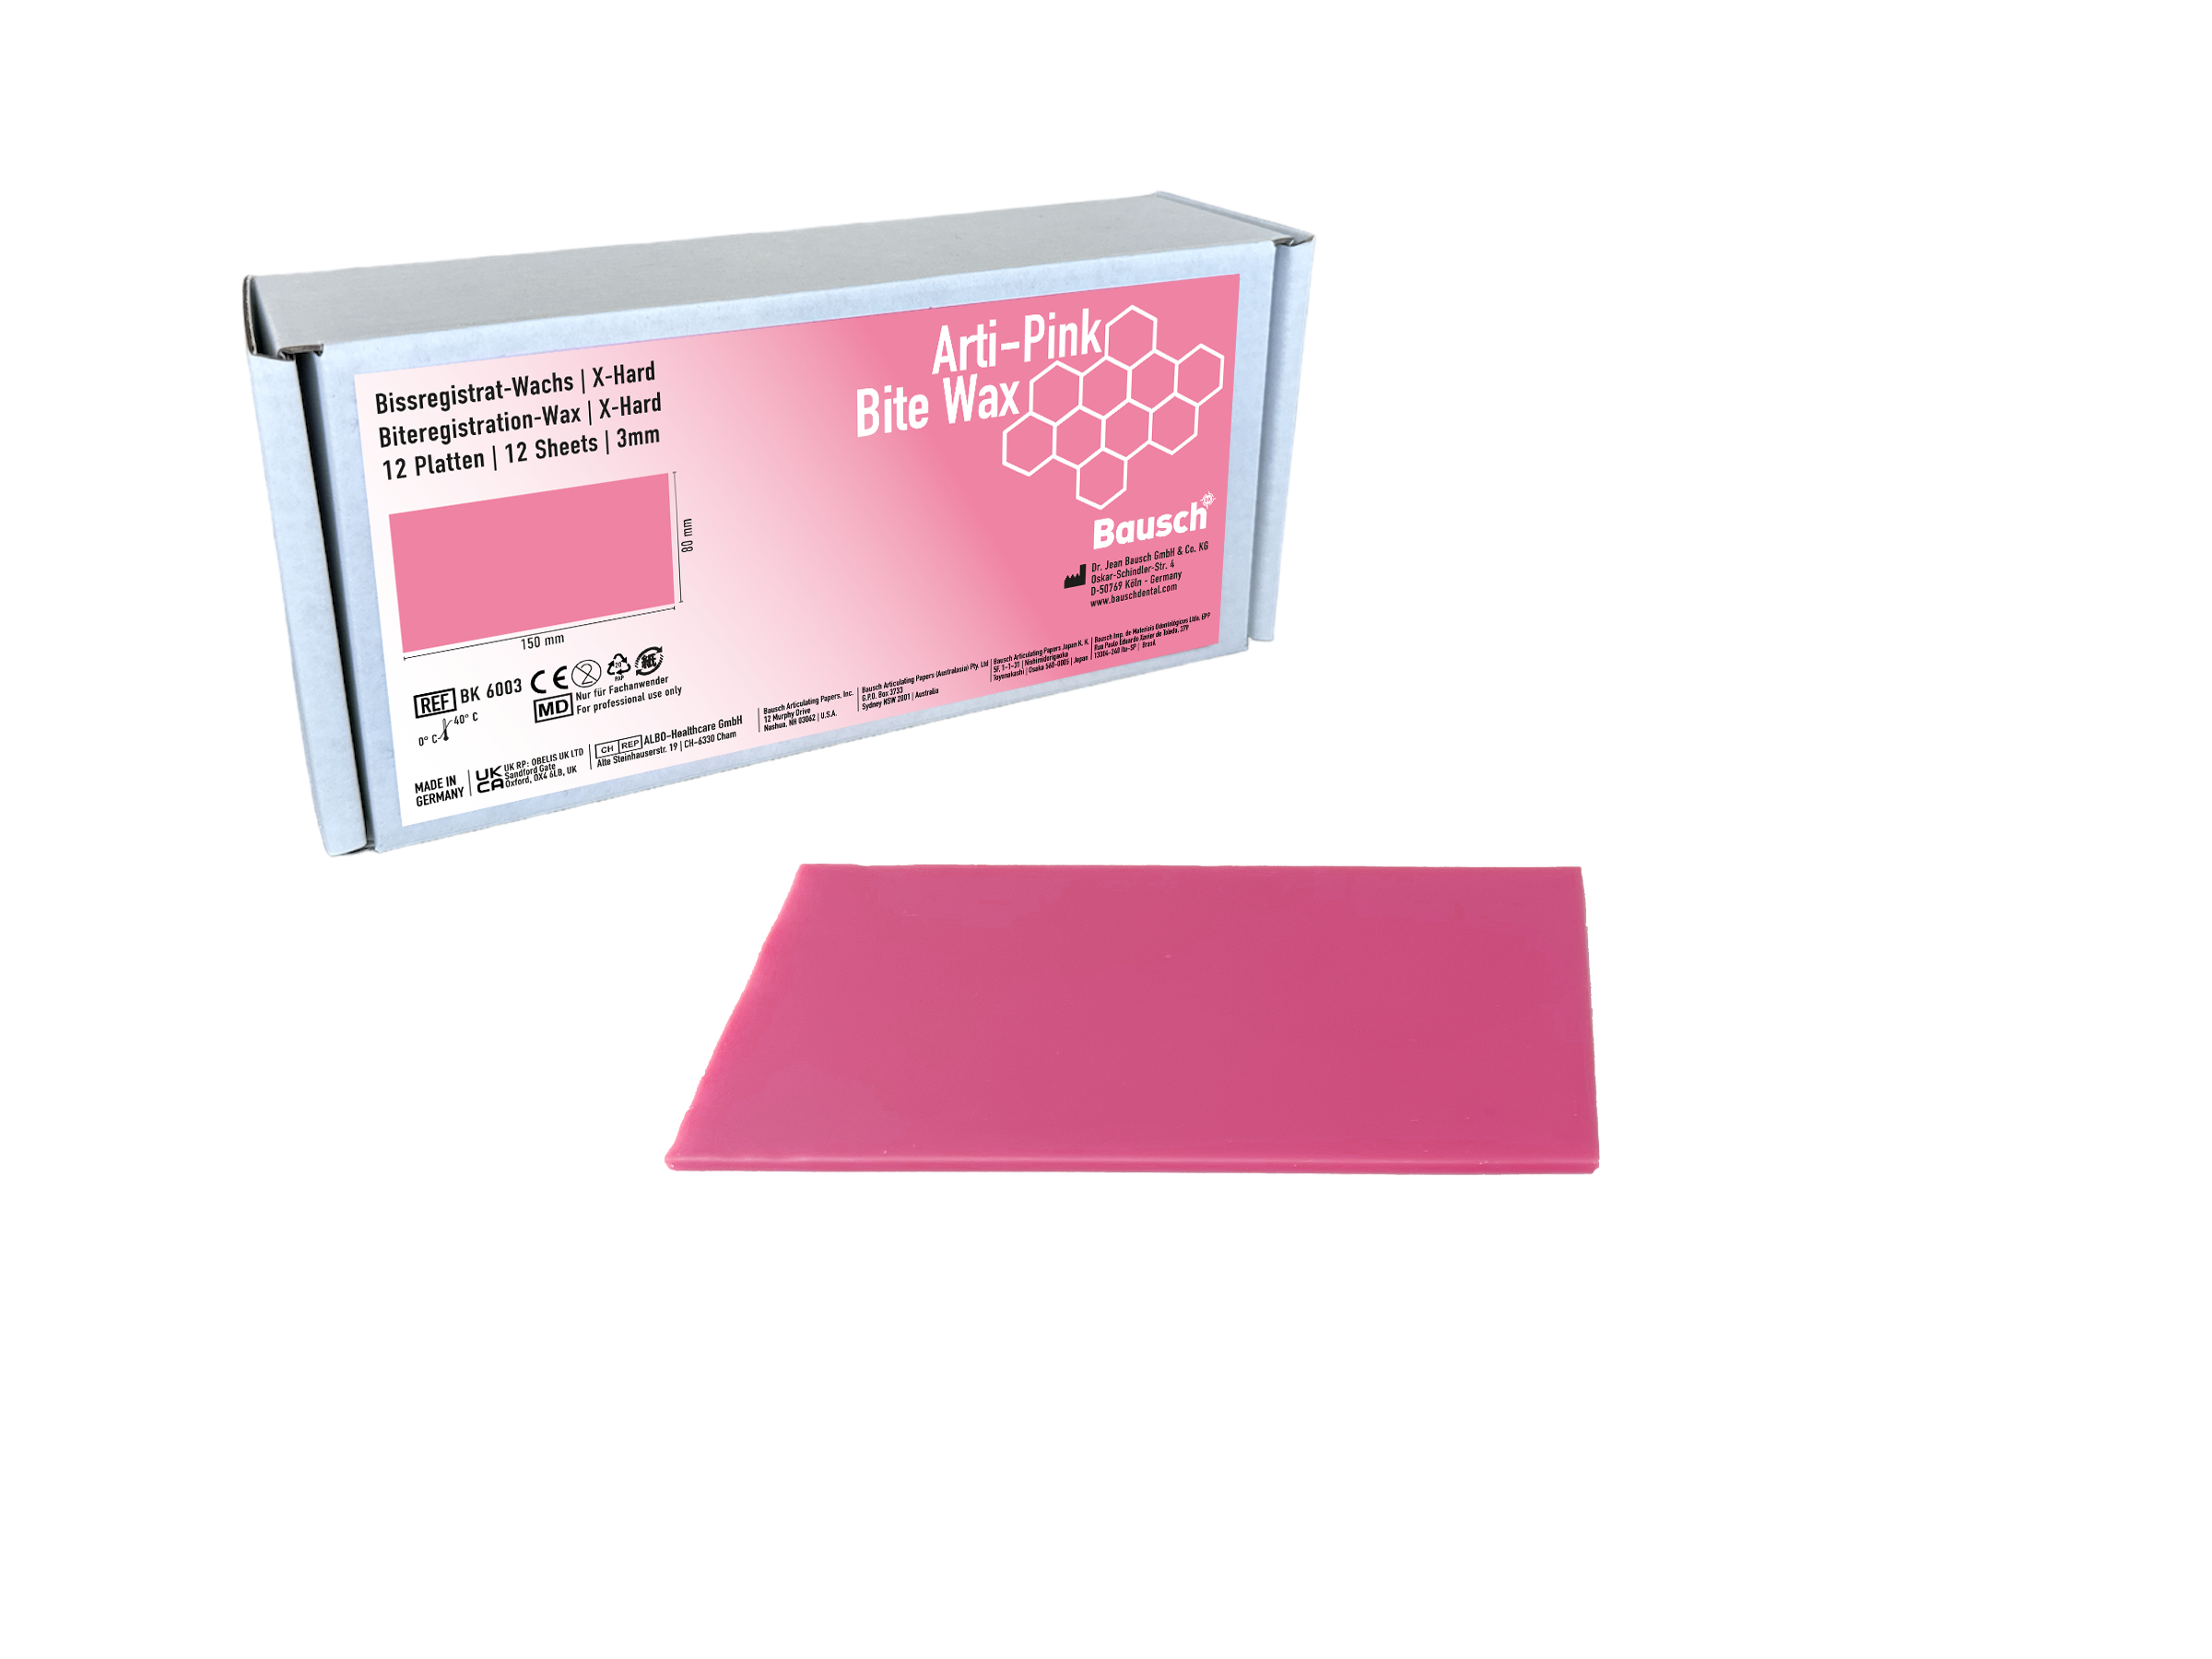 Arti-Pink Bite Wax, rechteckig 80 mm x 150 mm, 12 pcs.